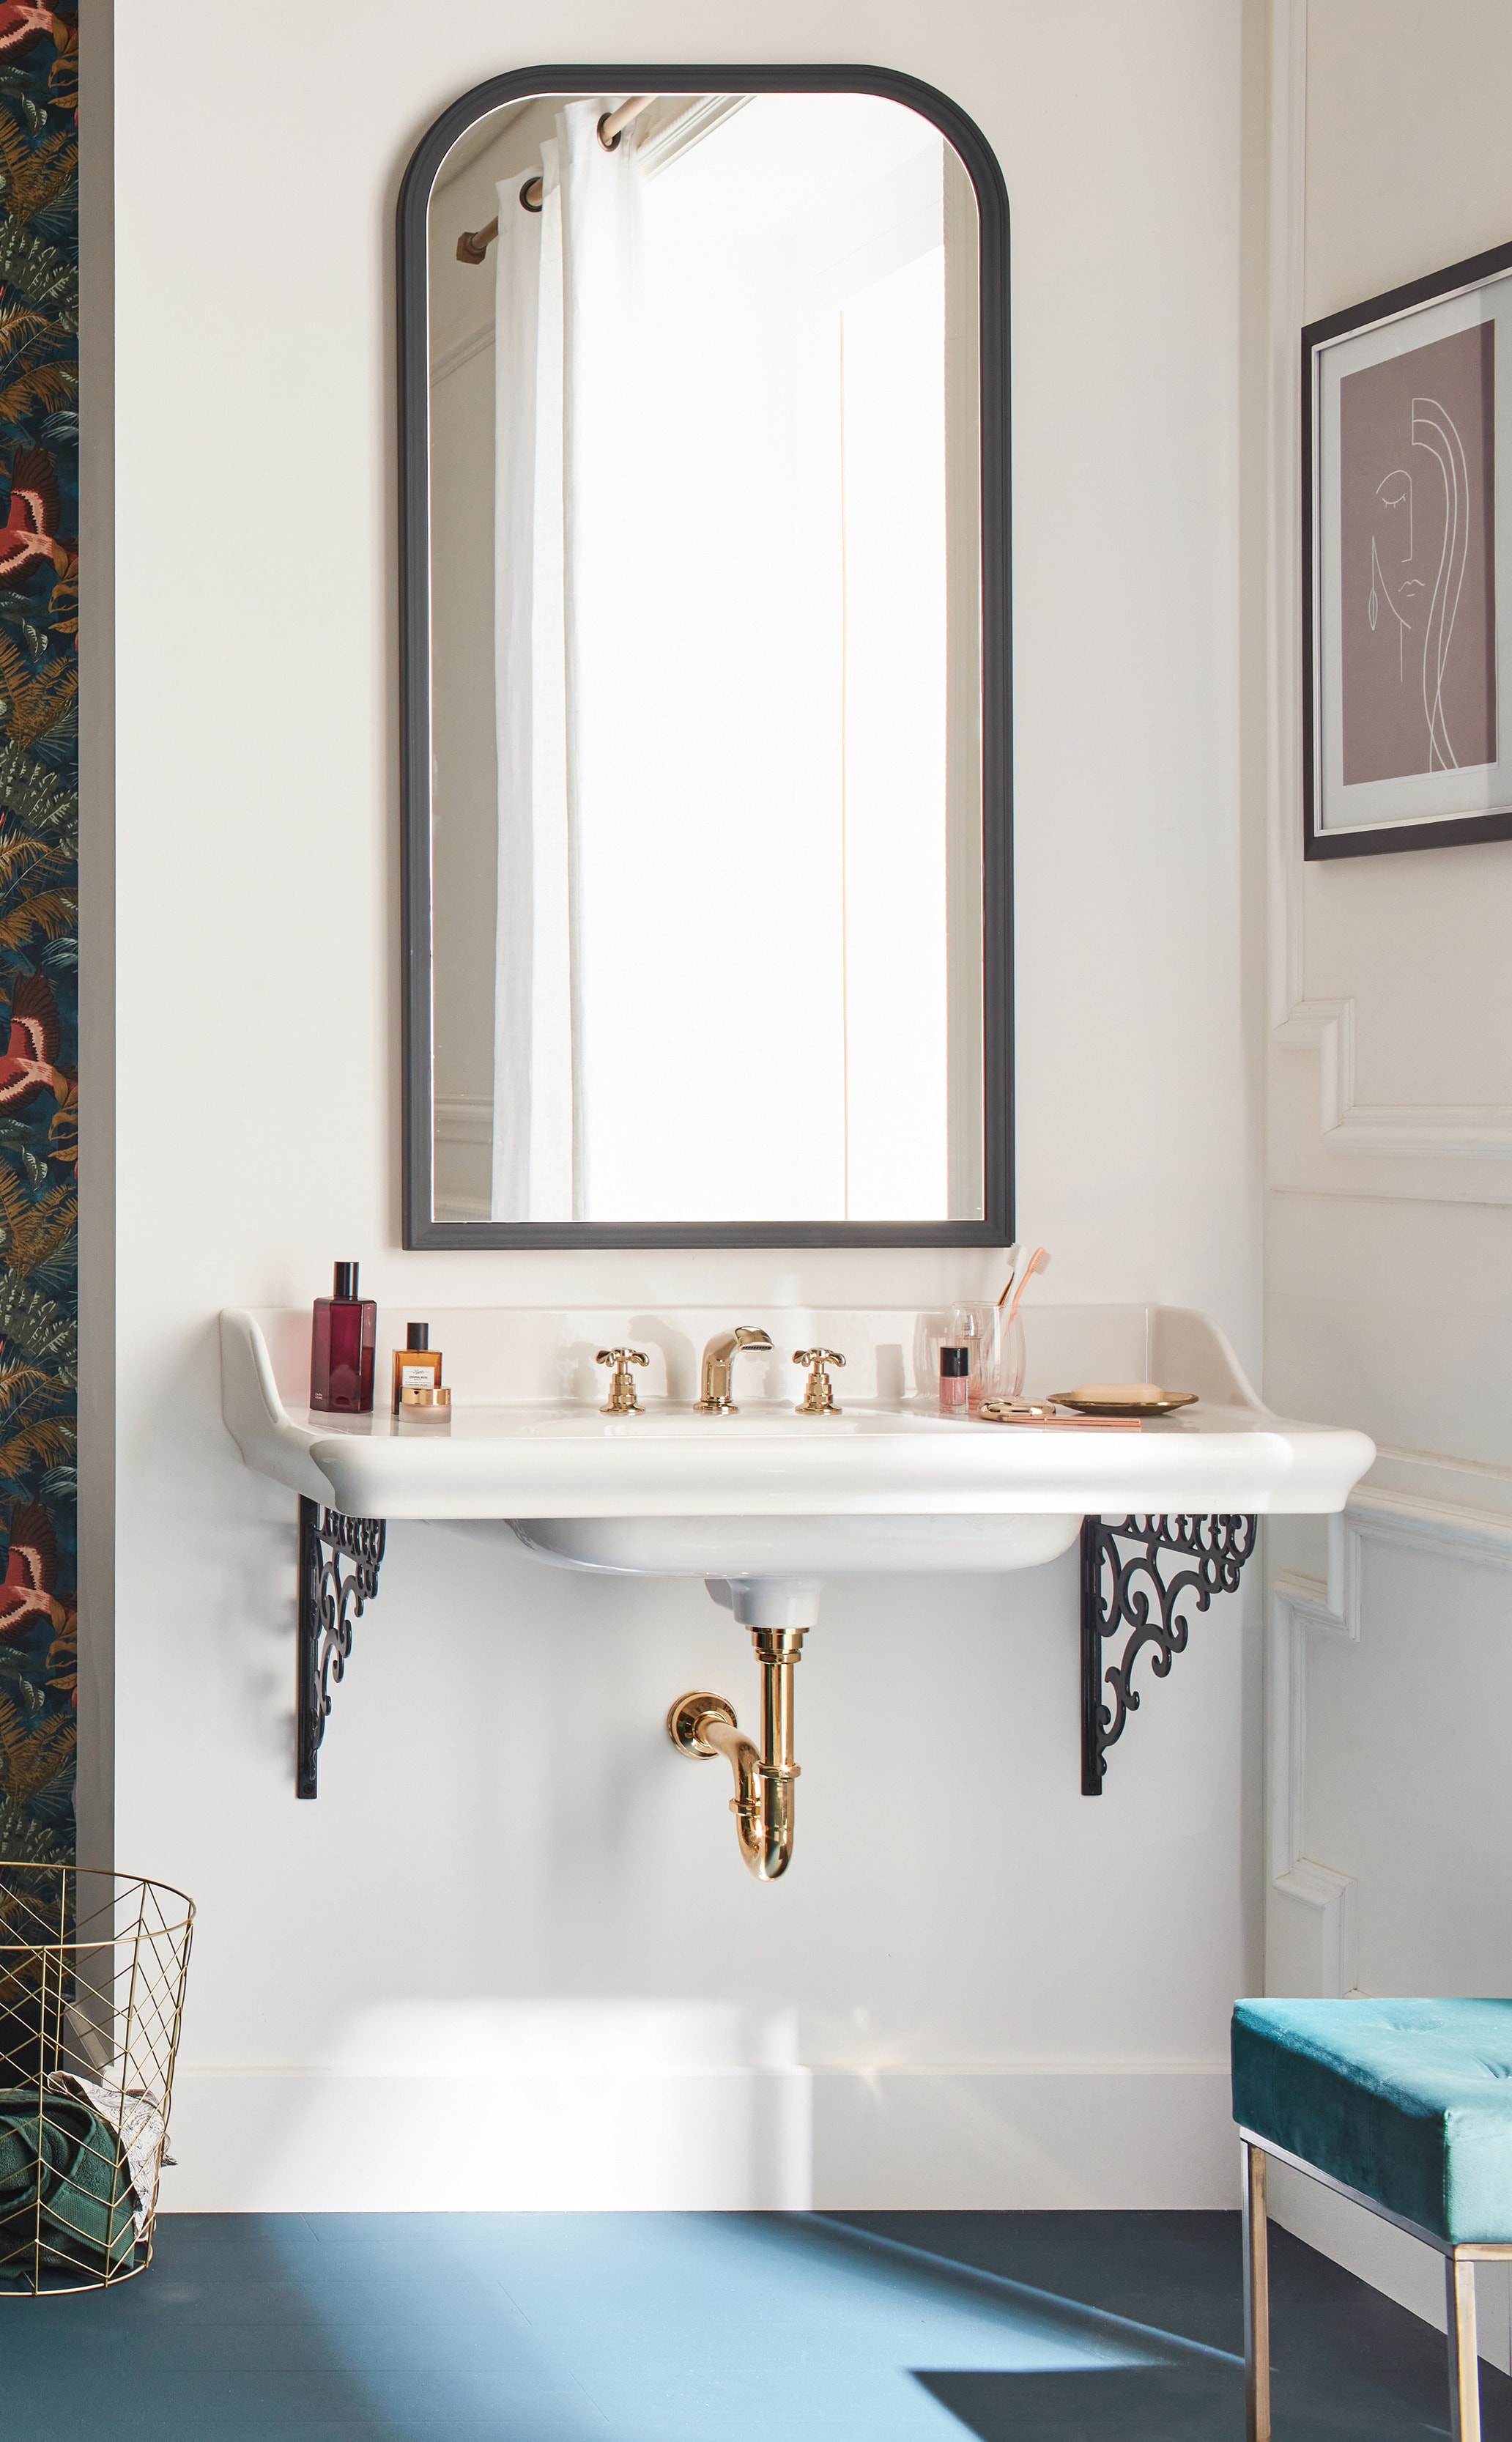 Double vasque dans la salle de bain : laquelle choisir ? – Blog BUT